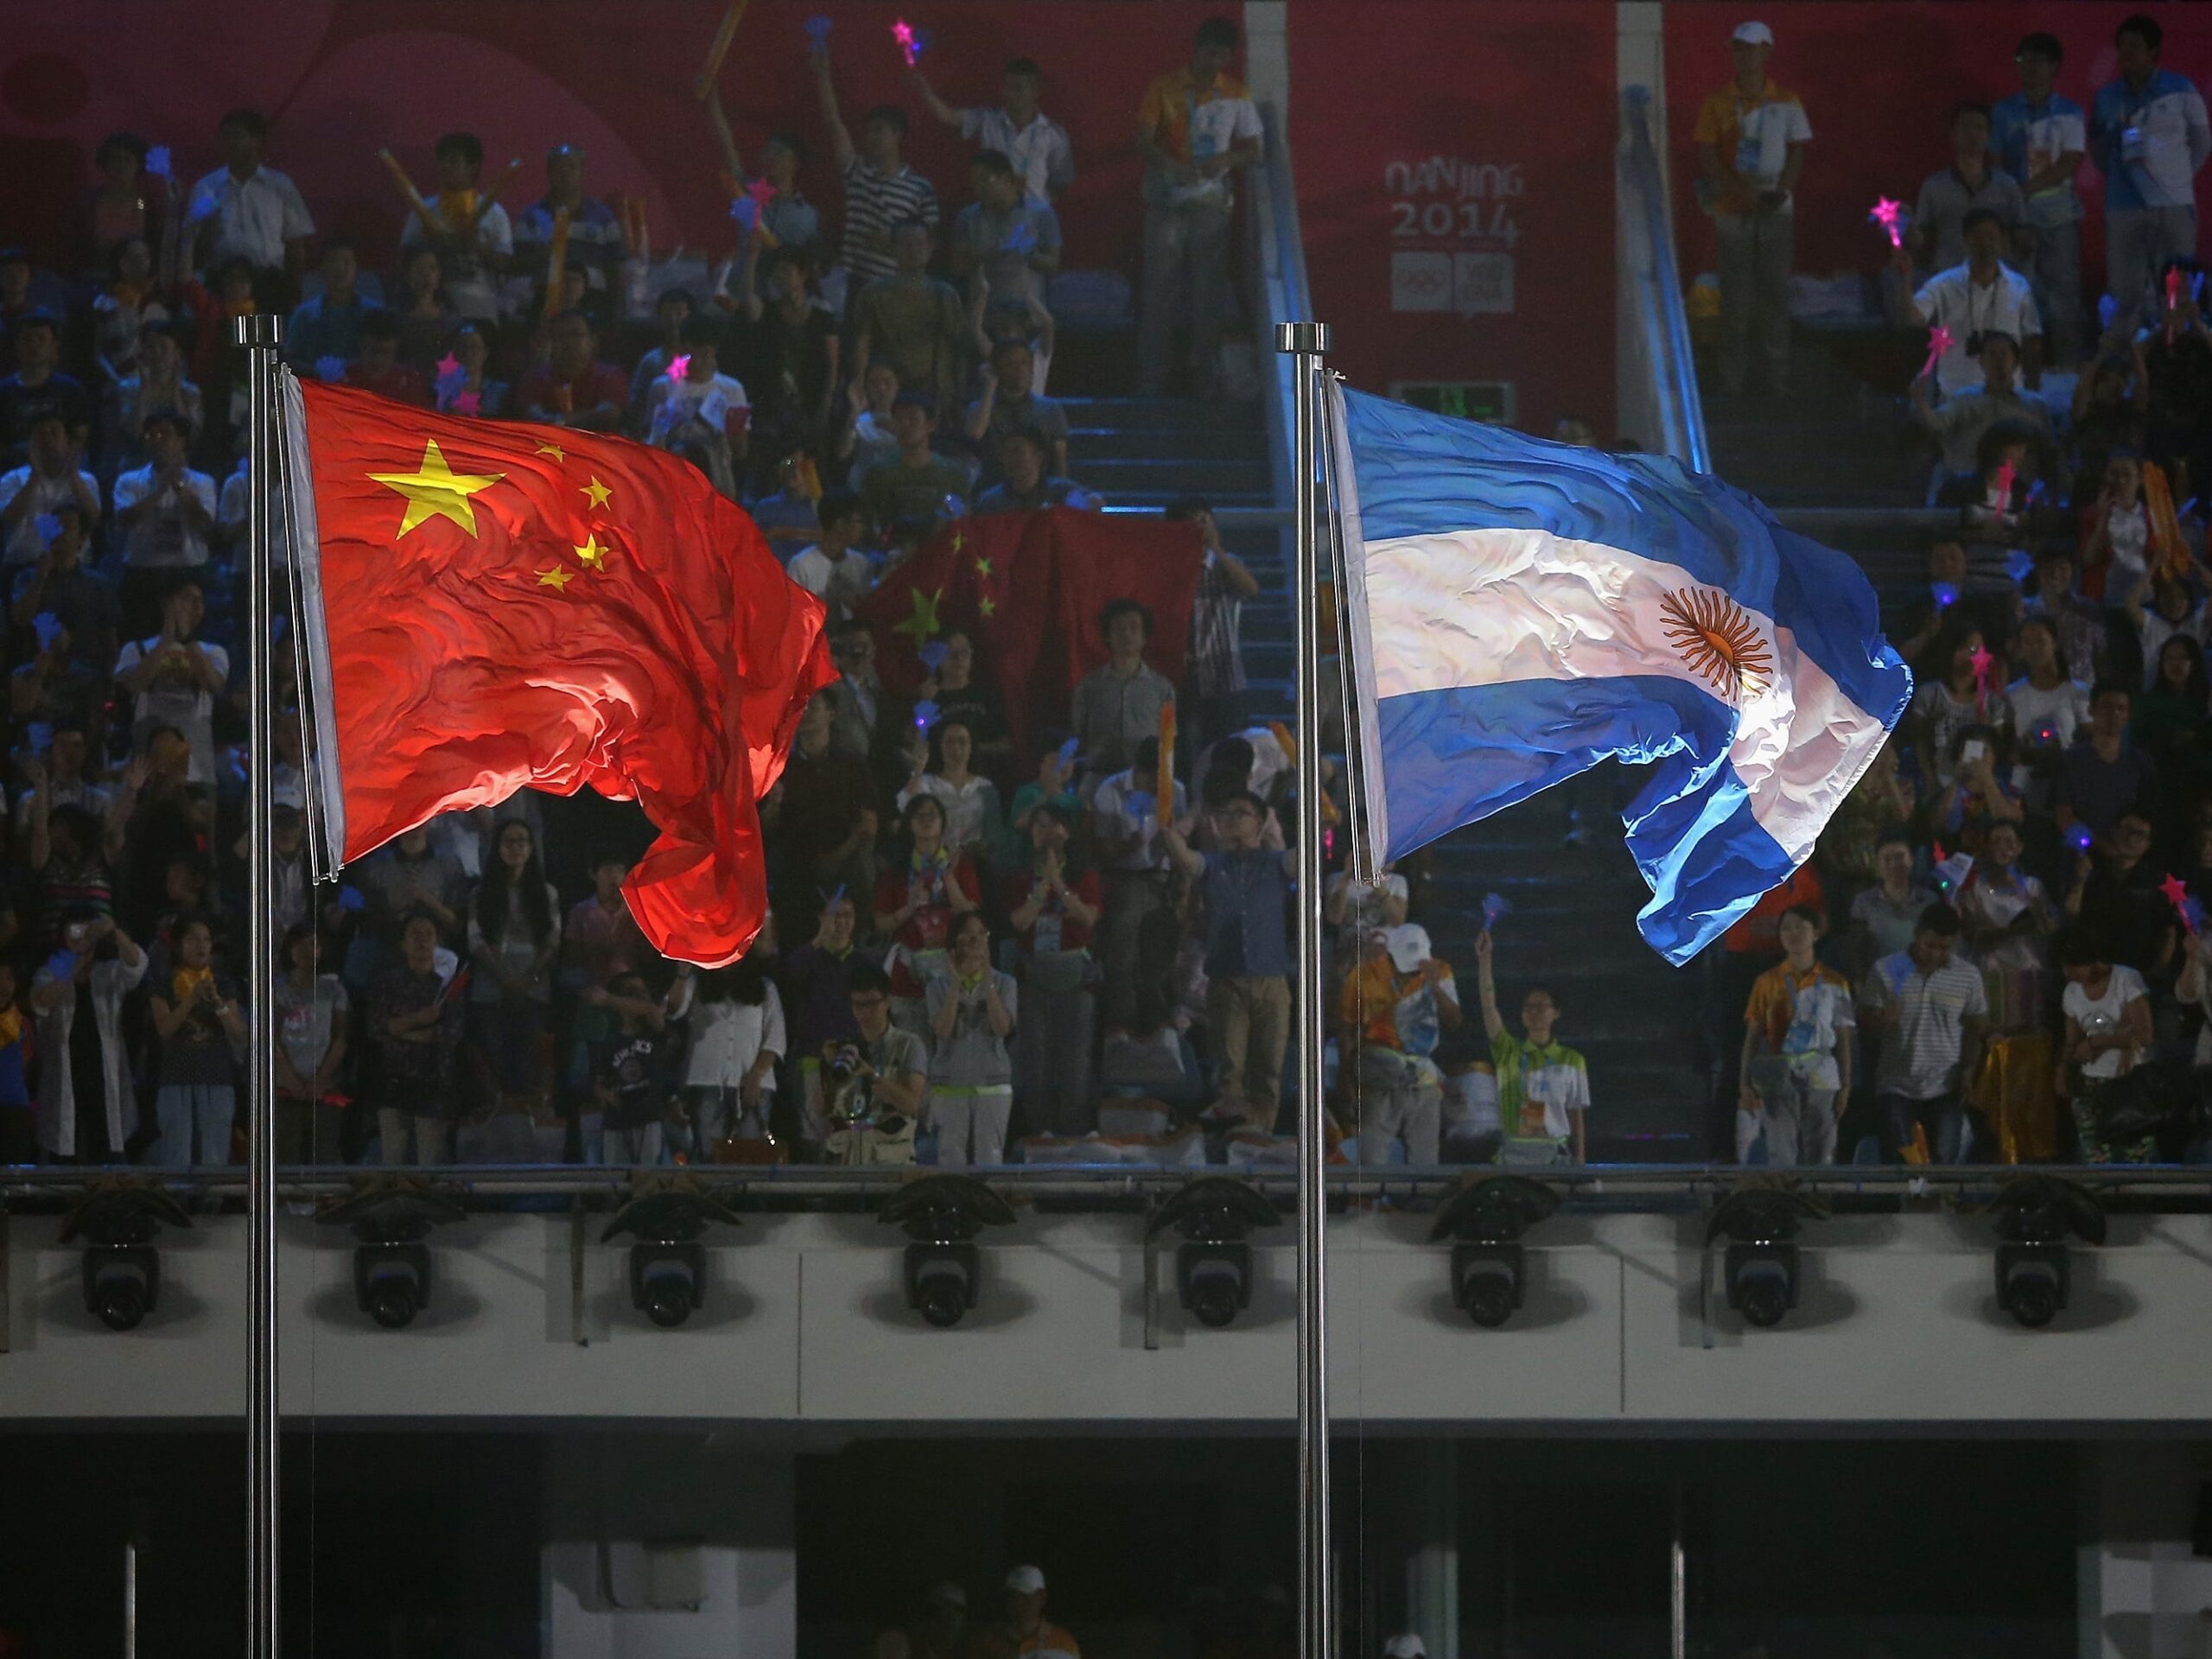 De vlaggen van China en Argentinië tijdens de slotceremonie van de Olympische Jeugd Zomerspelen in Nanjing in 2014.